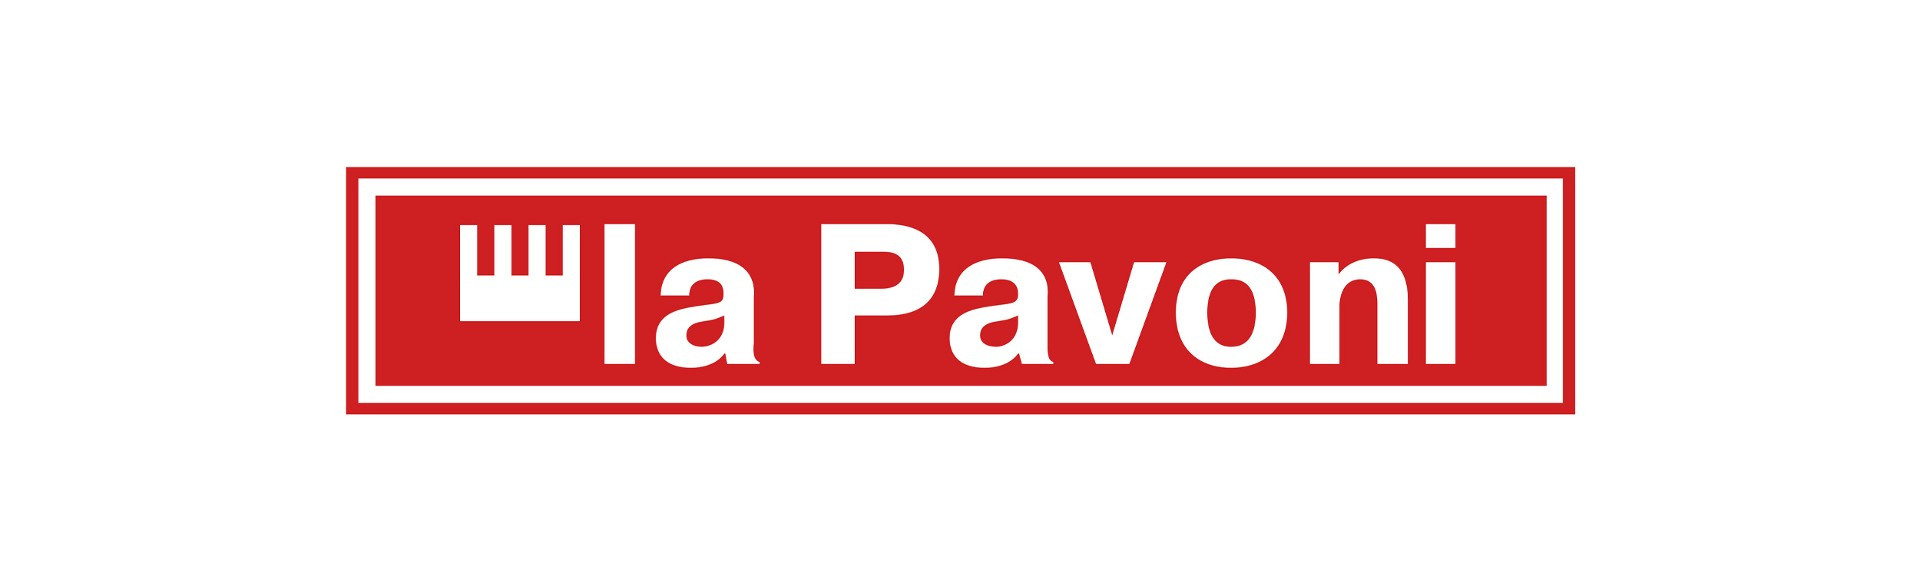 LaPavoni